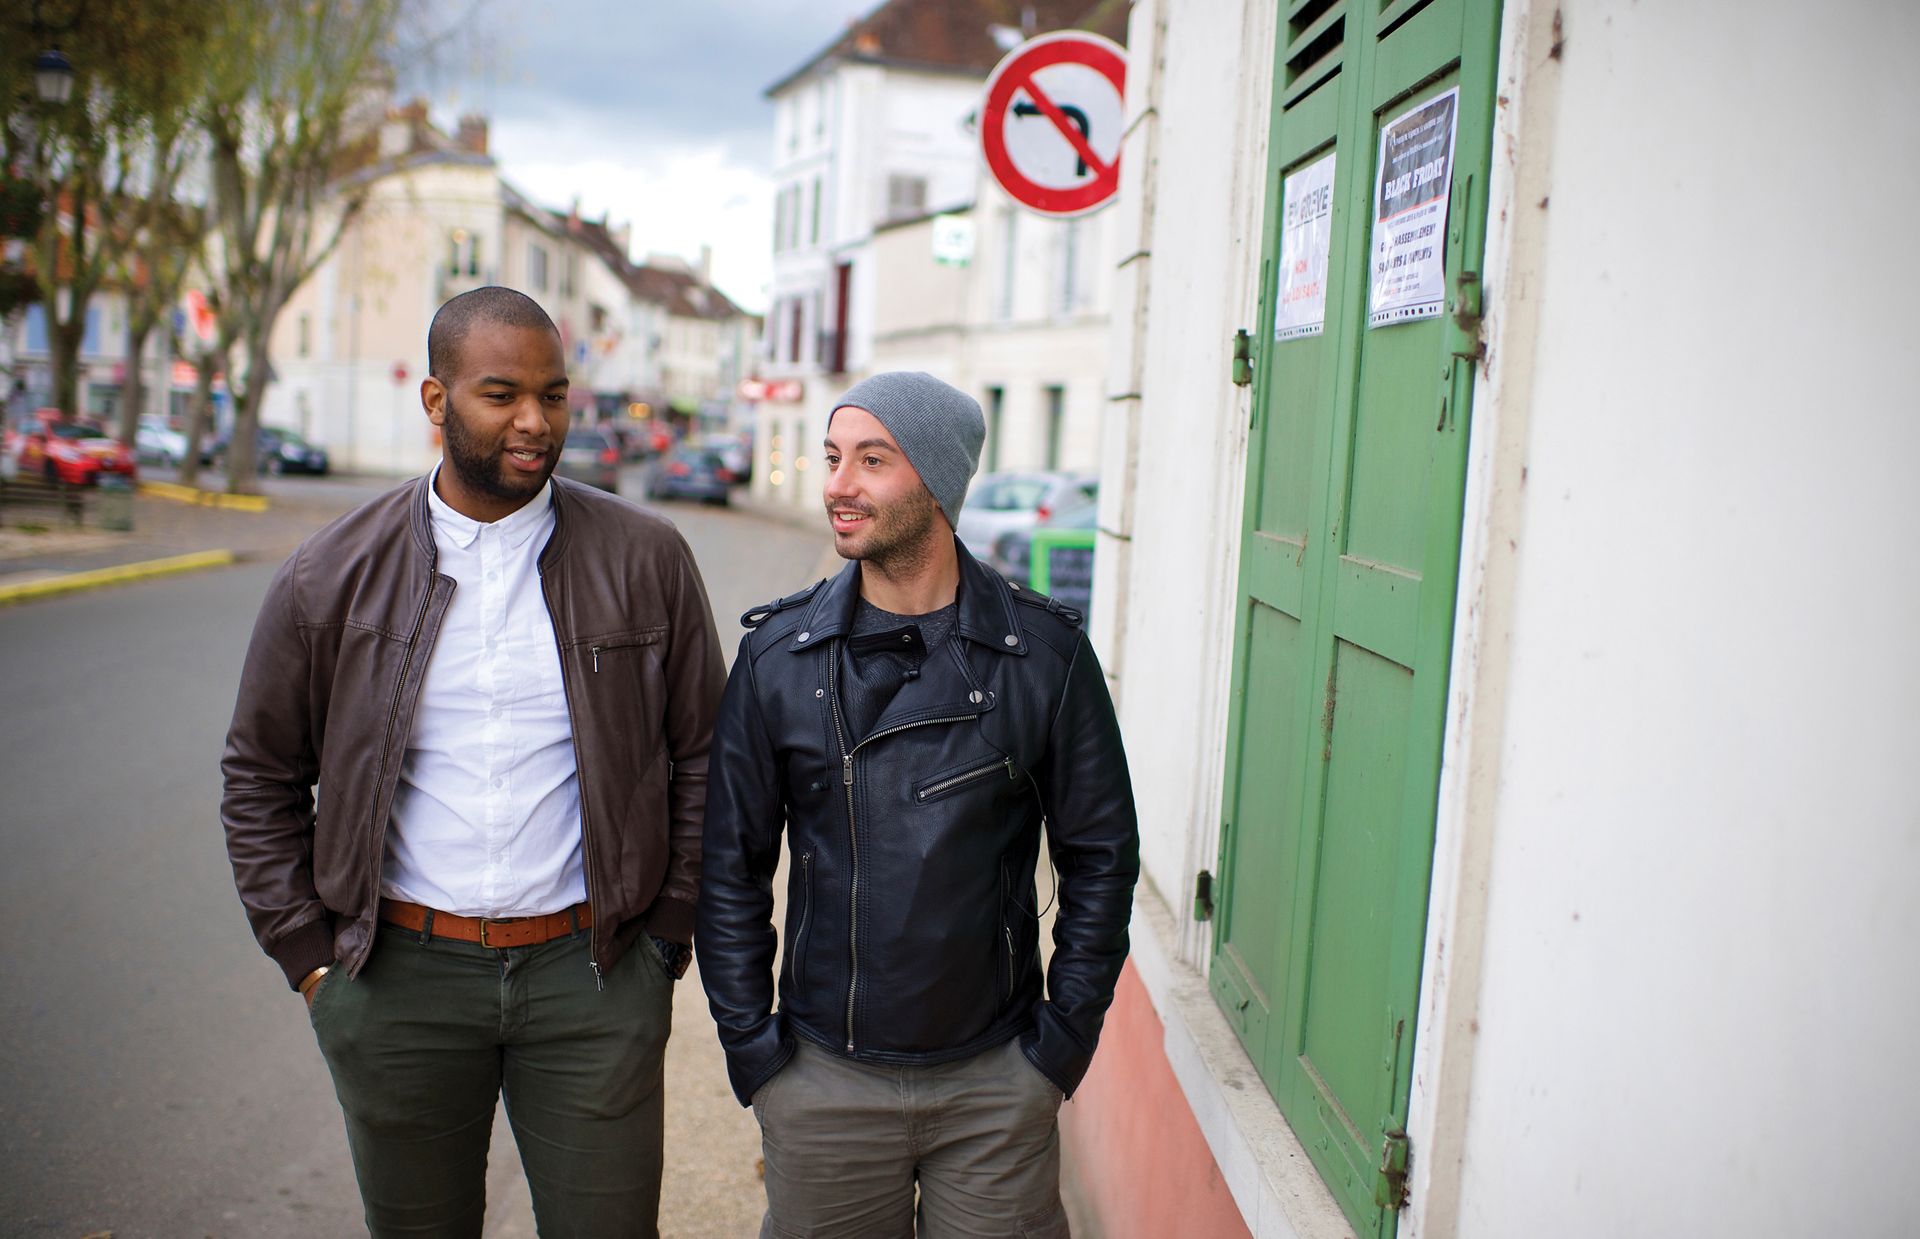 凱祐·索比（左）和安東尼·林奈（右）一同走過他們在法國巴黎市郊的社區街道上。他們從小就是好朋友。